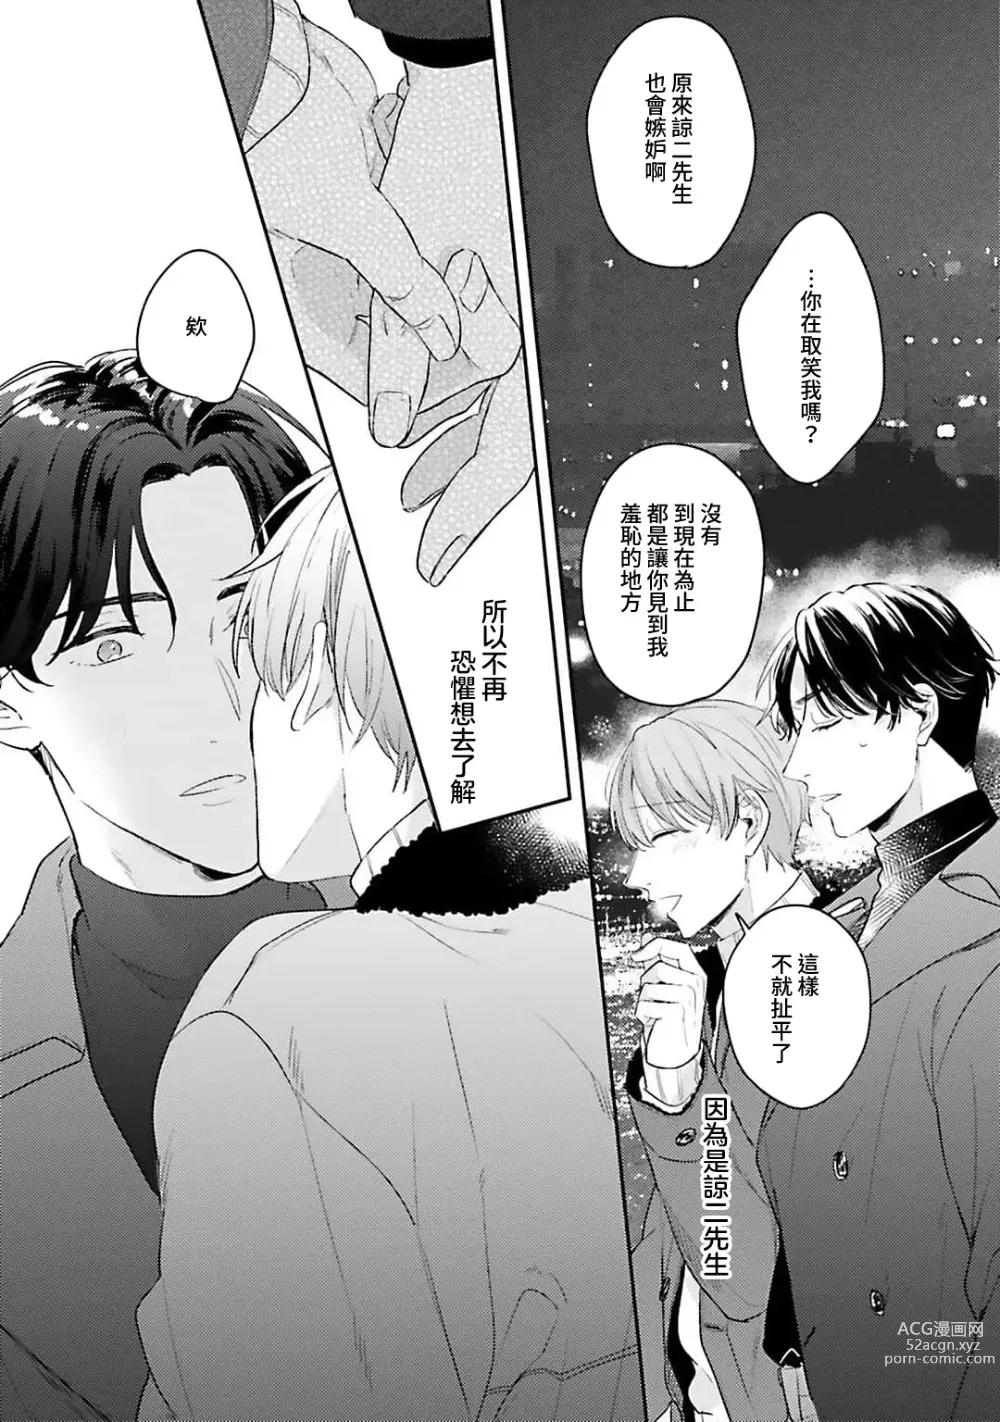 Page 114 of manga 绽放的恋爱皆为醉与甜1